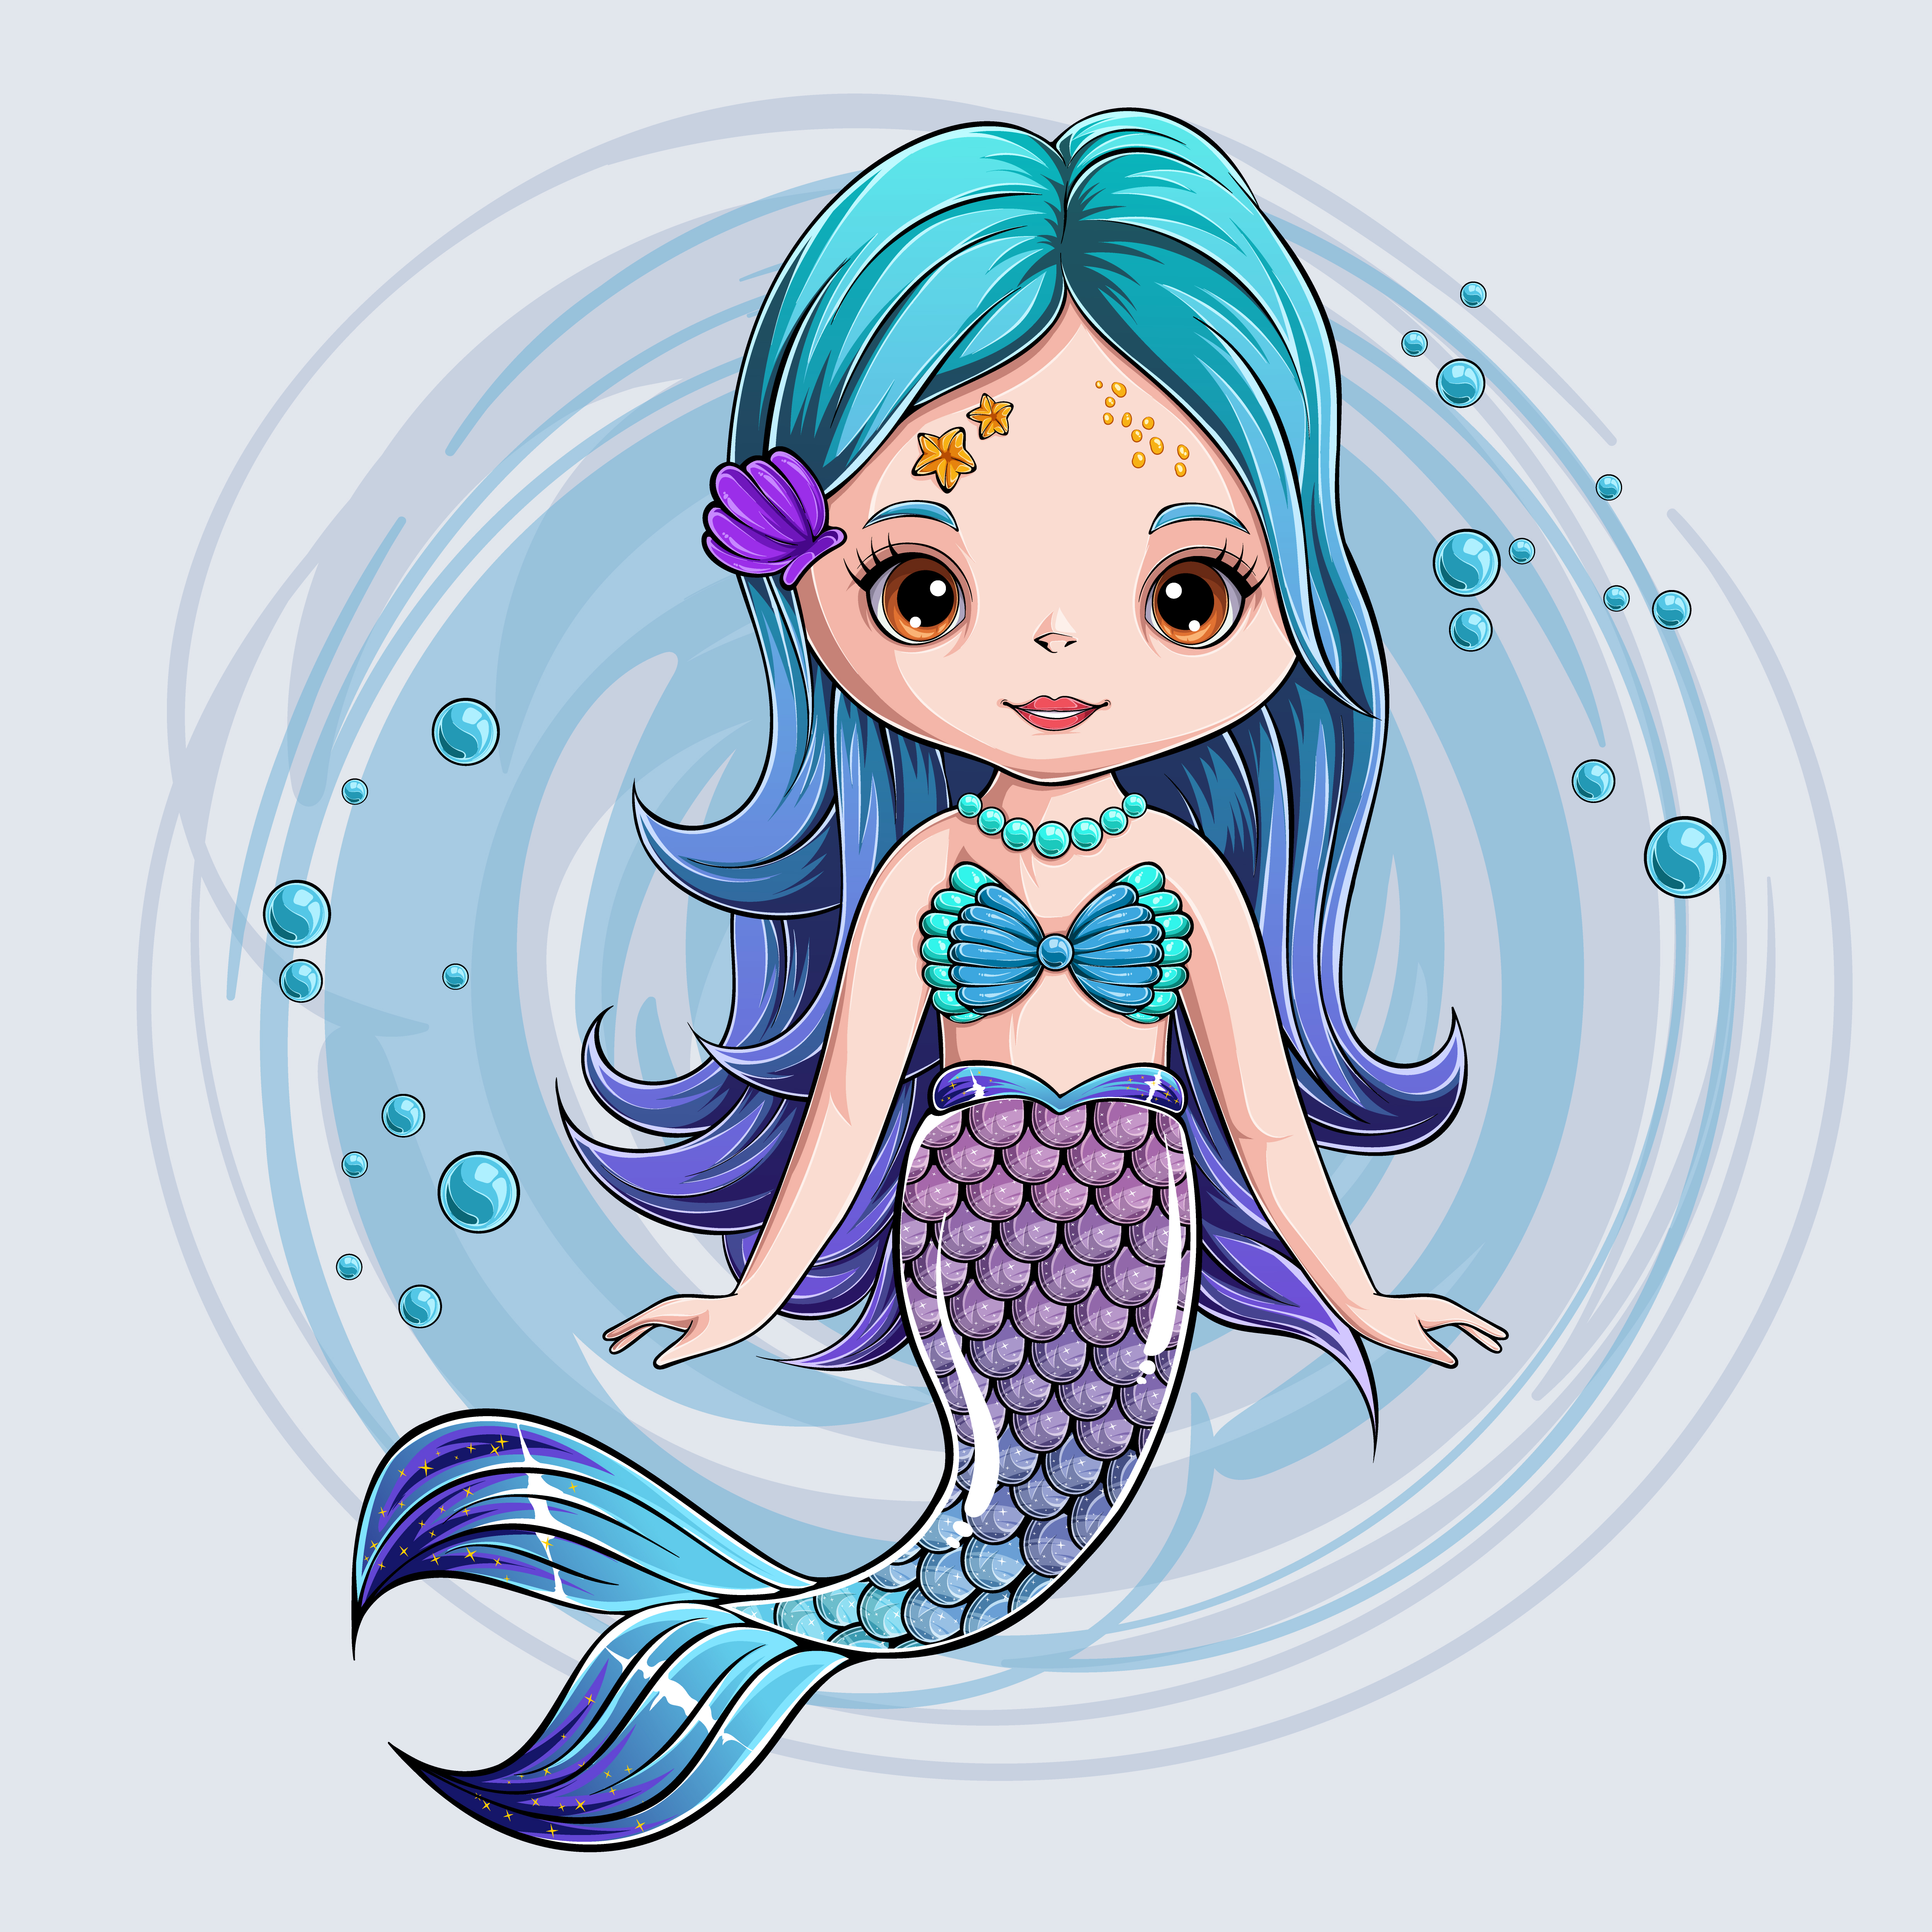 https://static.vecteezy.com/ti/vecteur-libre/p3/2646604-dessine-a-la-mignonne-sirene-personnage-souriant-sirene-princesse-vectoriel.jpg